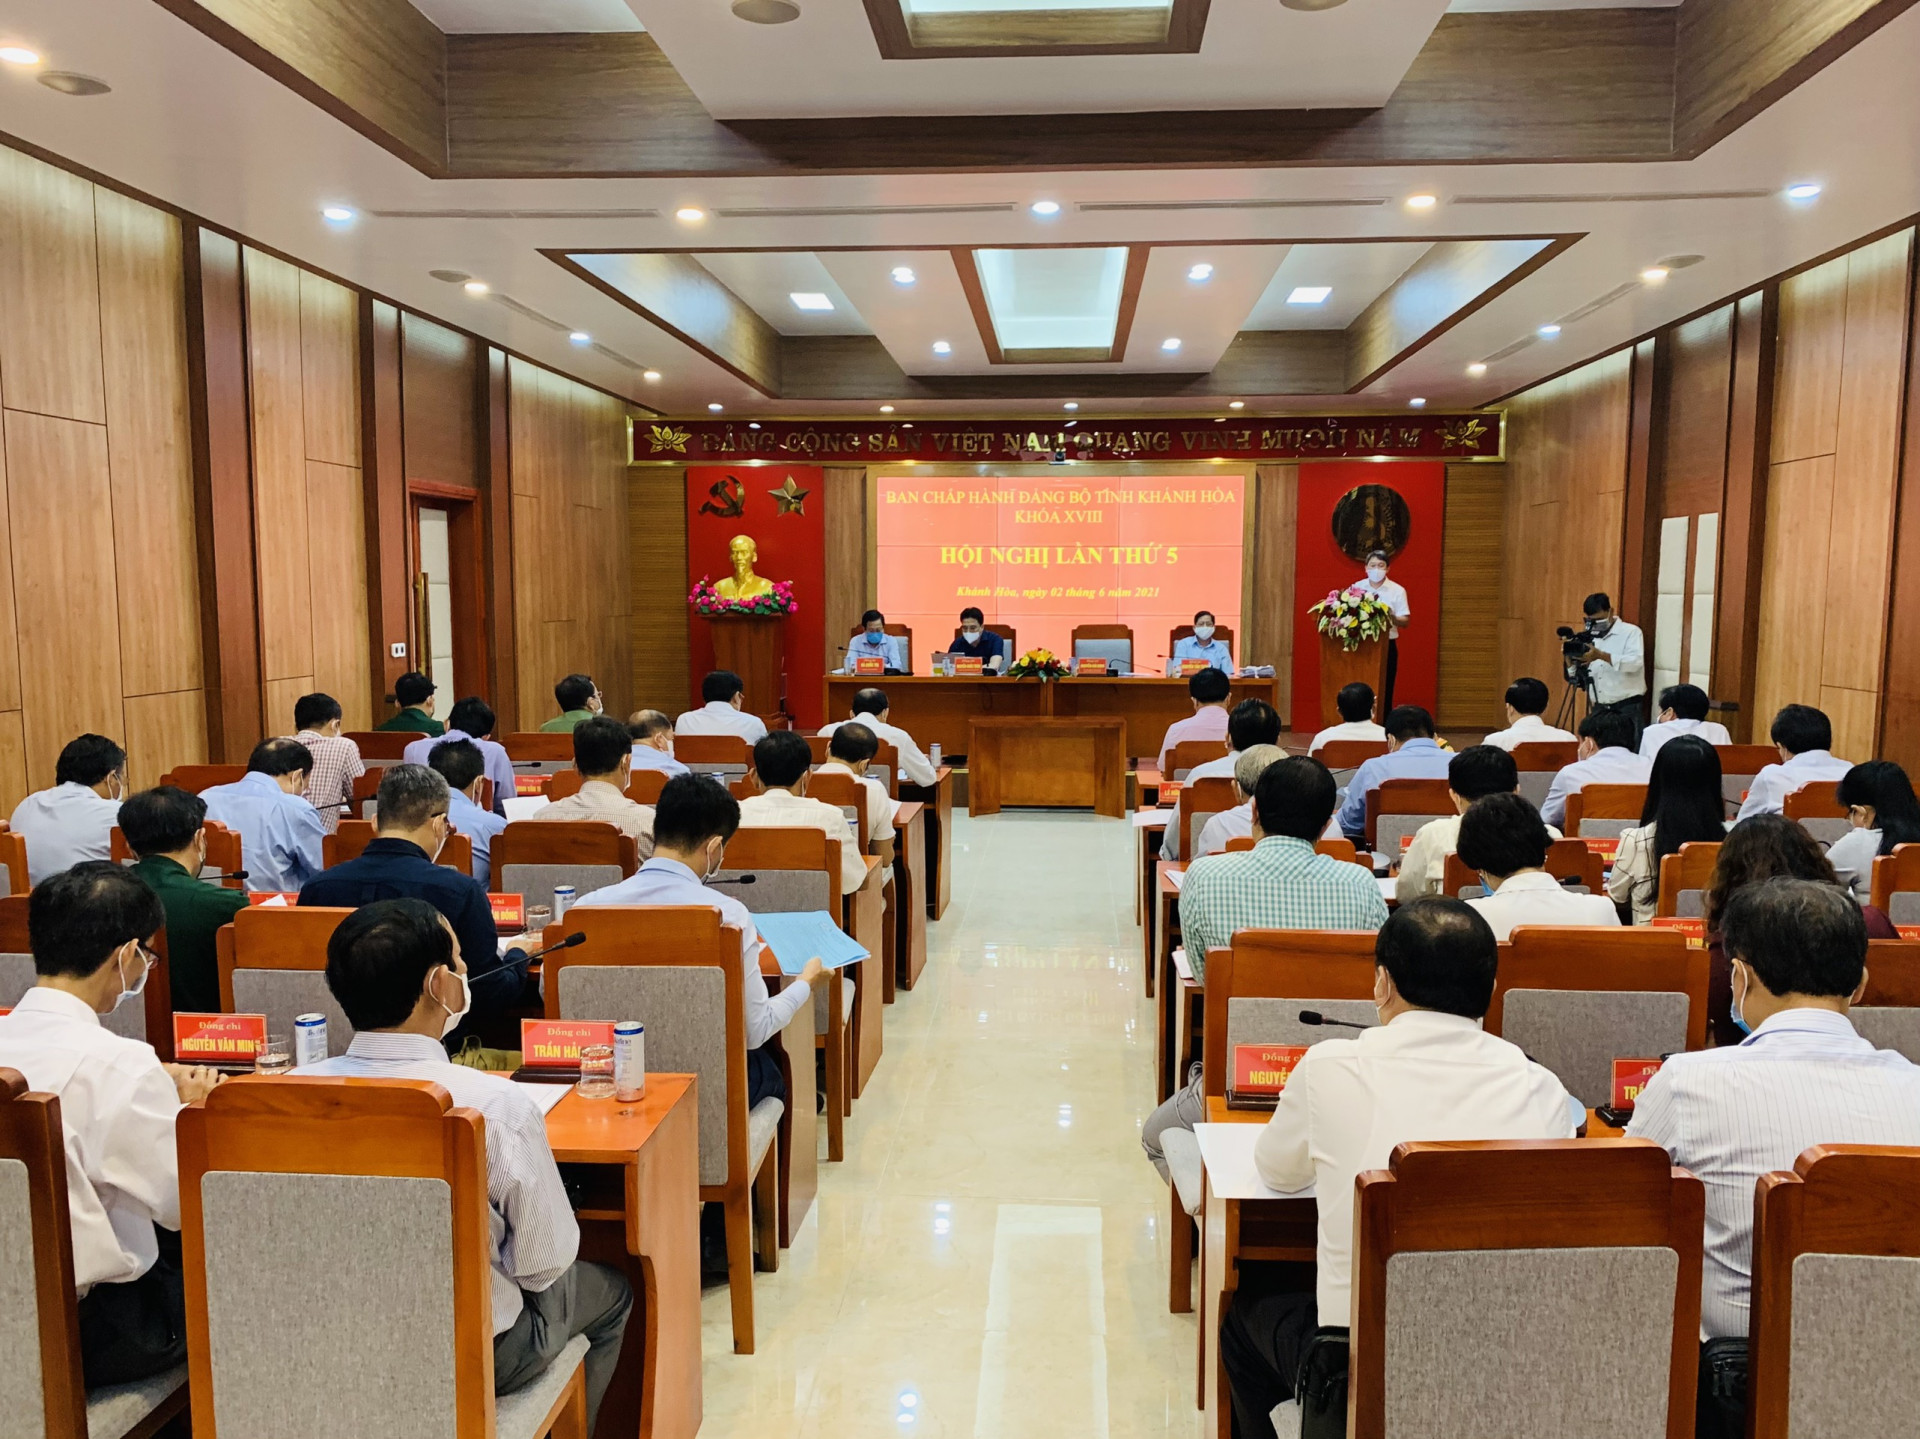 Quang cảnh Hội nghị Tỉnh ủy Khánh Hòa lần thứ 5